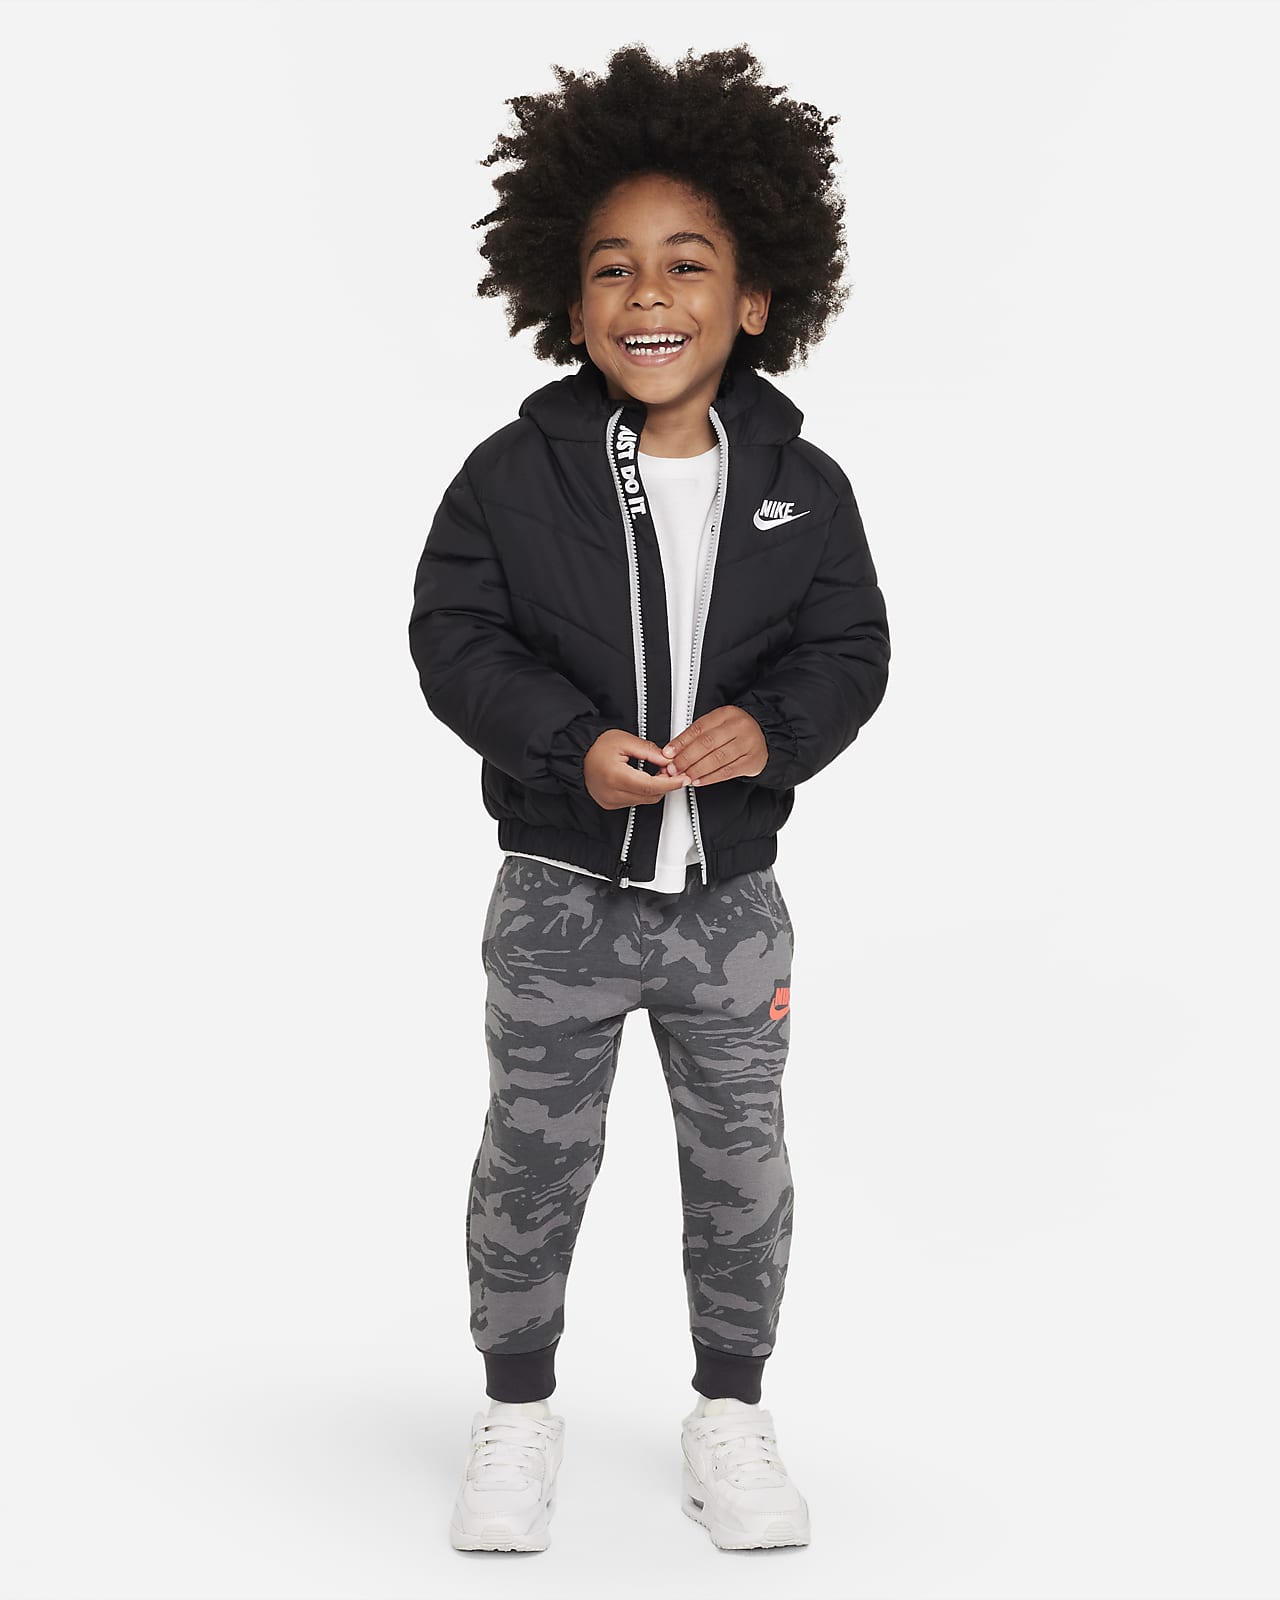 Detecteerbaar defect Buitengewoon Nike Toddler Hooded Chevron Puffer Jacket. Nike LU